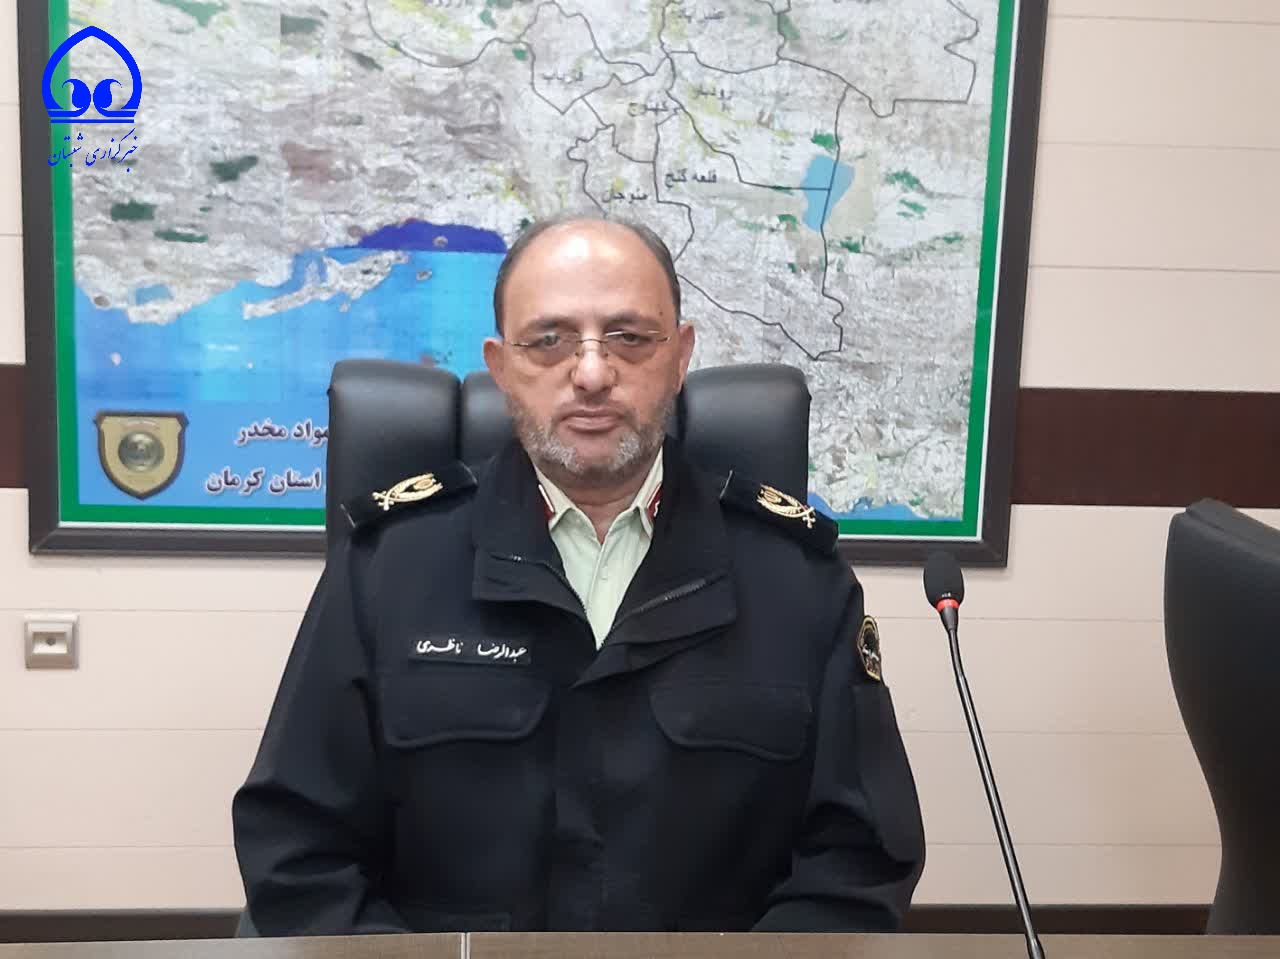 کرمان در رتبه دوم کشفیات مواد مخدر/تشریح تازه ترین عملیات پلیس 